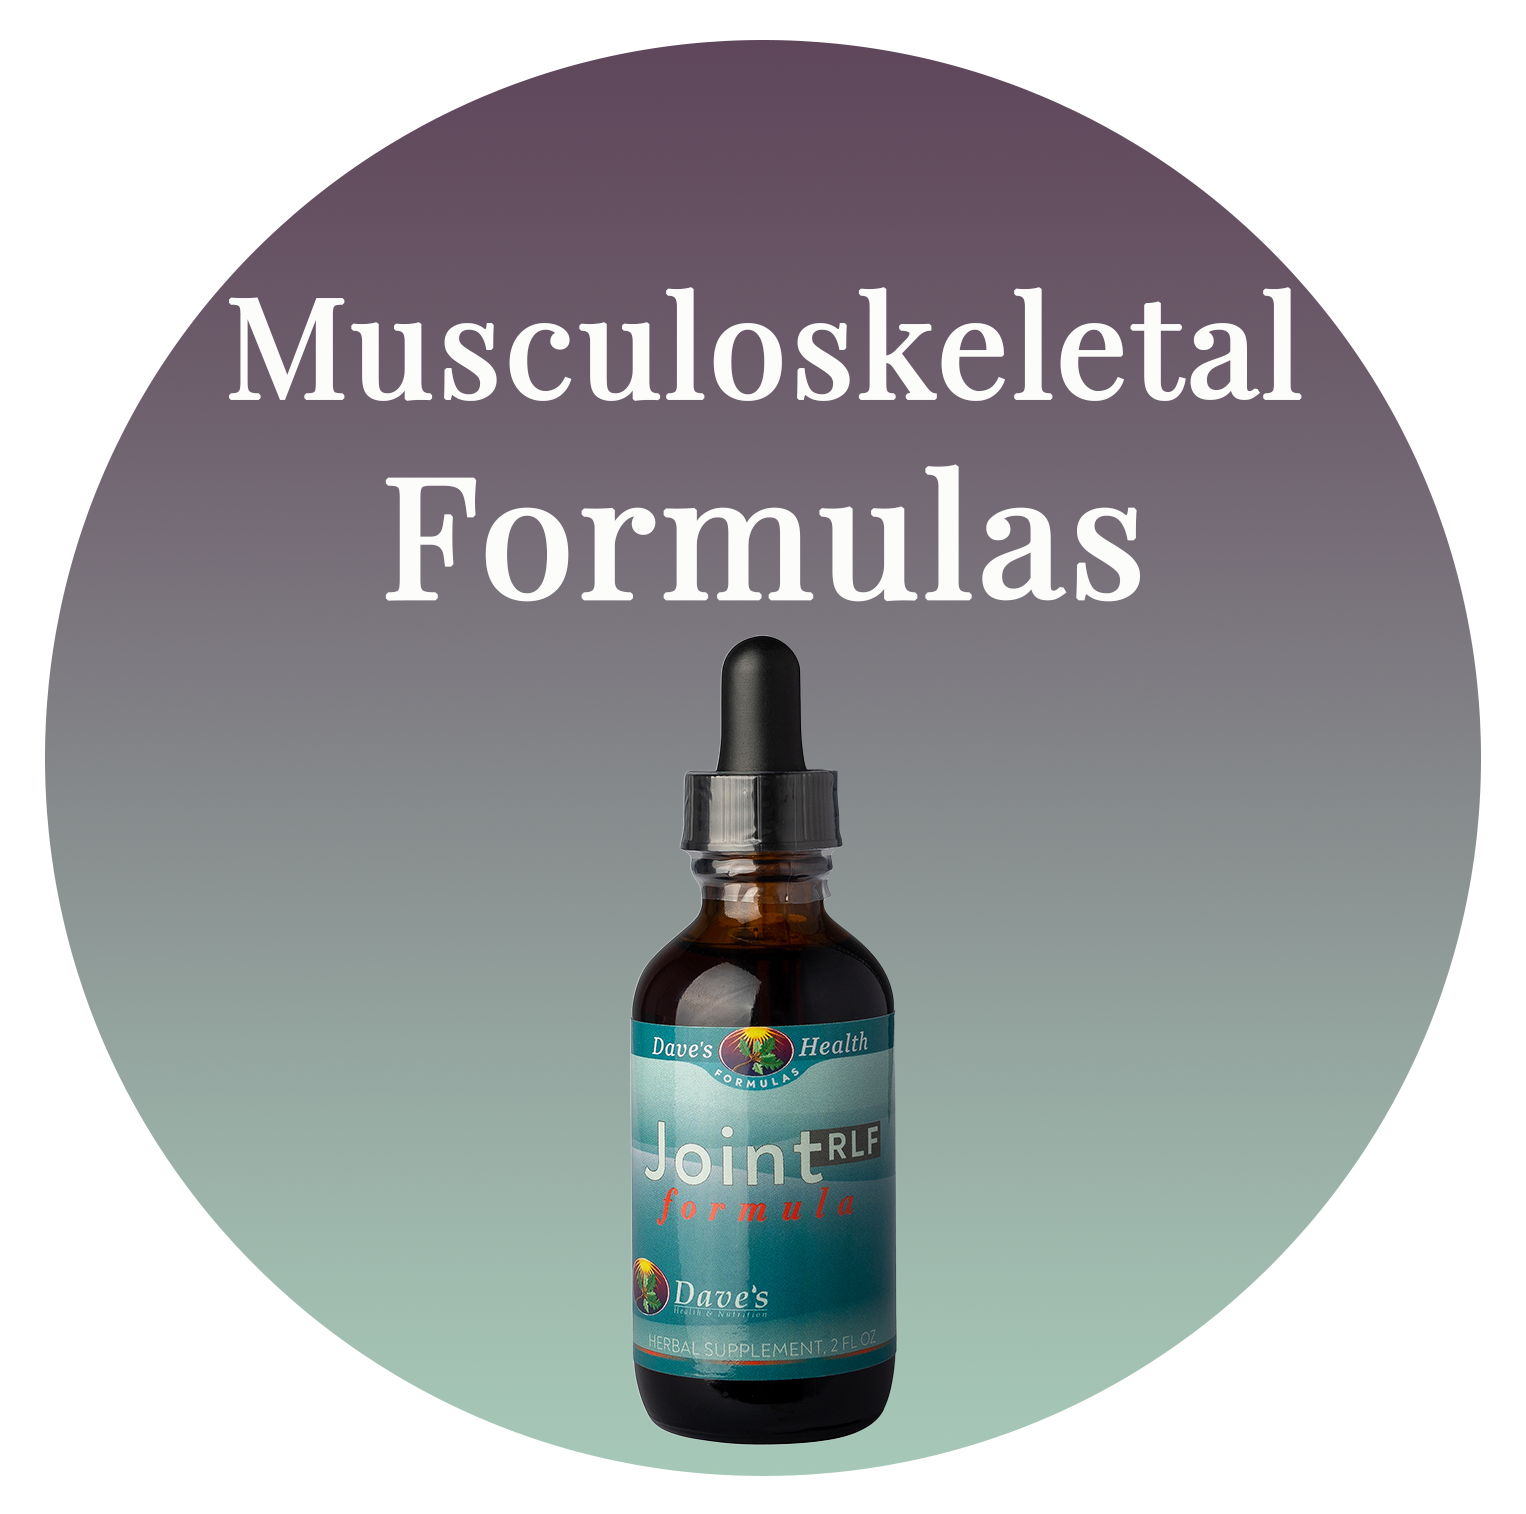 Musculoskeletal Formulas